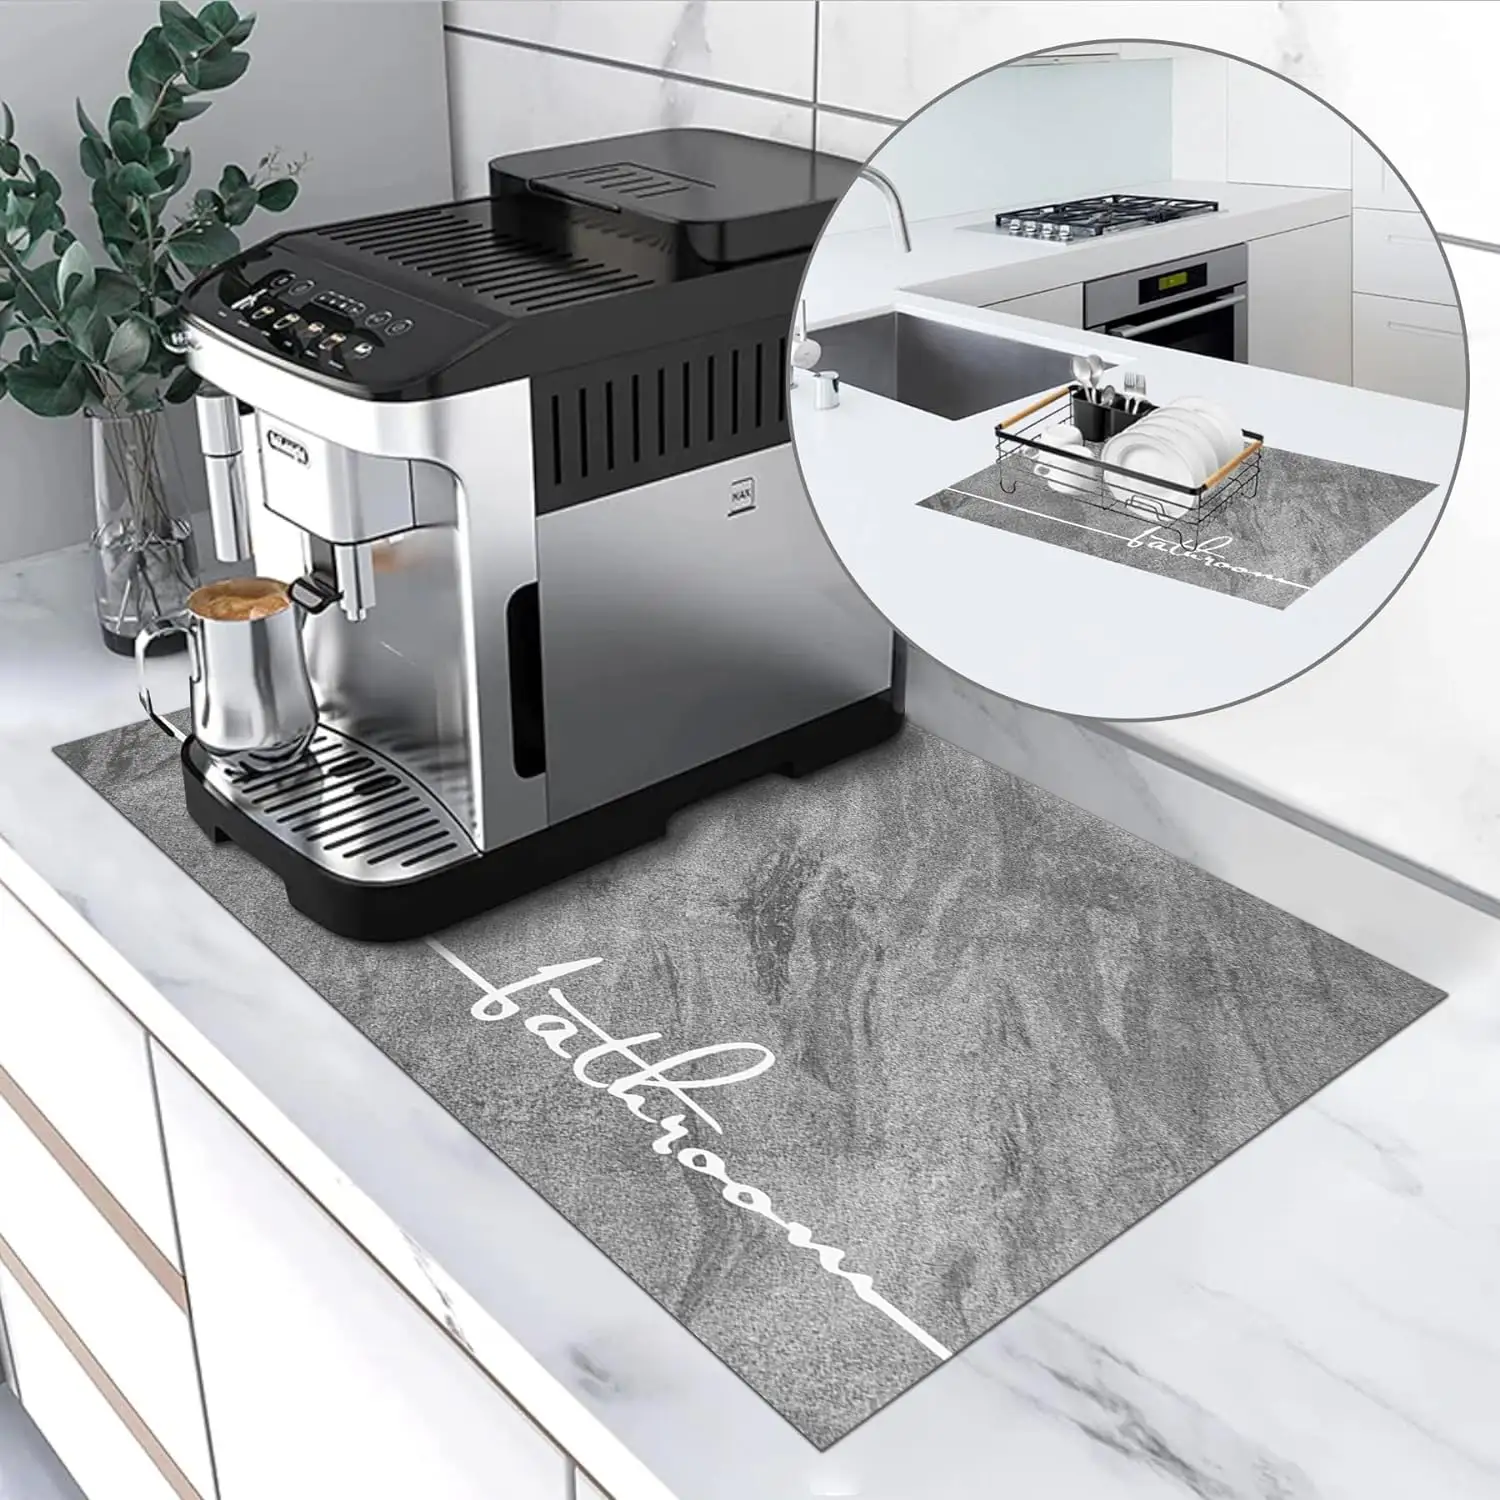 Rutschfeste Kaugummi-Kaffeematte super saugfähige Erde Kaffee Barmatte Maschine Kaffee-Topf Espressomatte für Geschirrregal